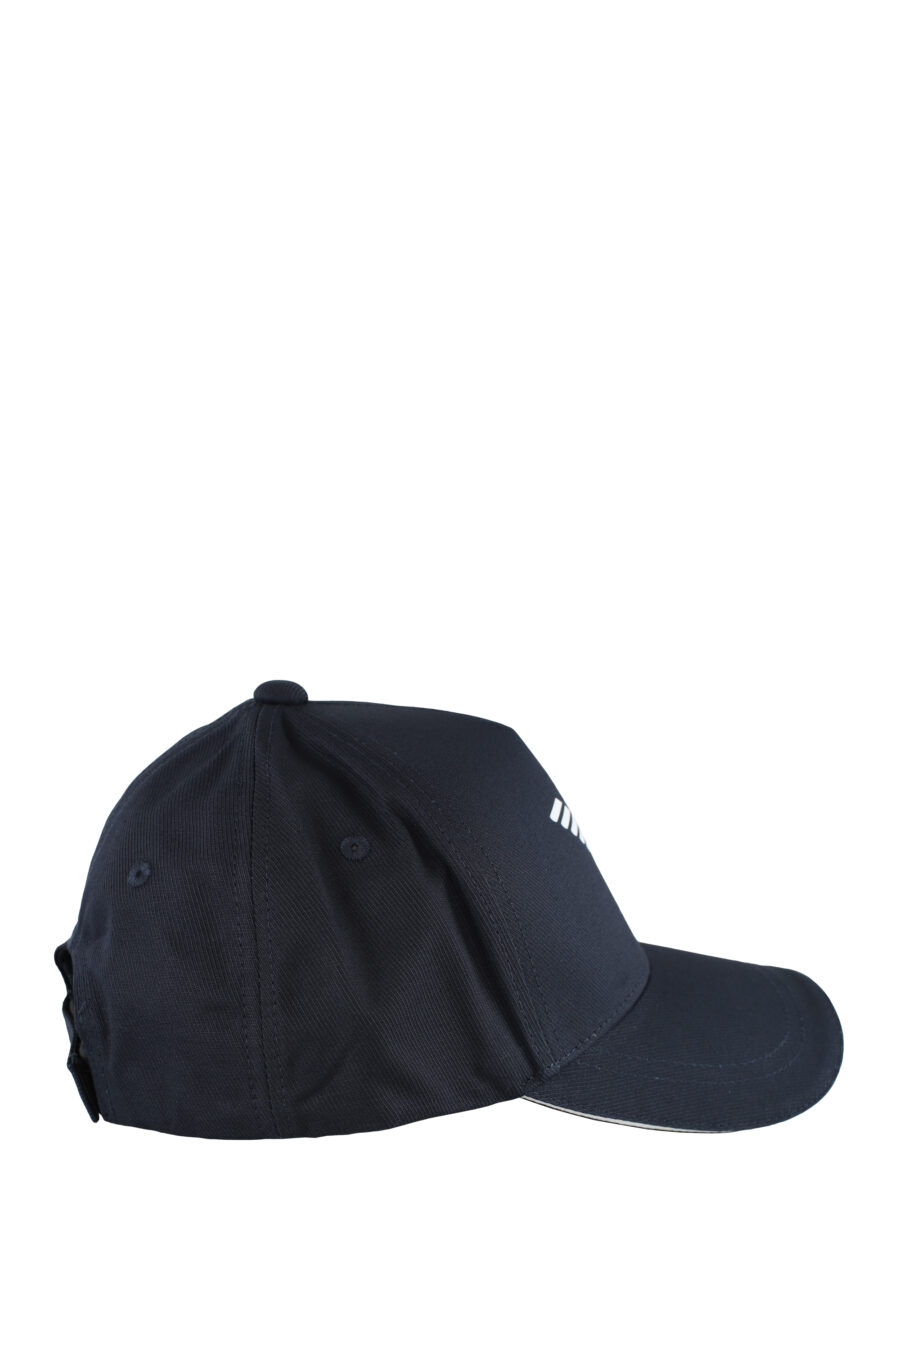 Gorra azul oscura con logo aguila blanco - IMG 5162